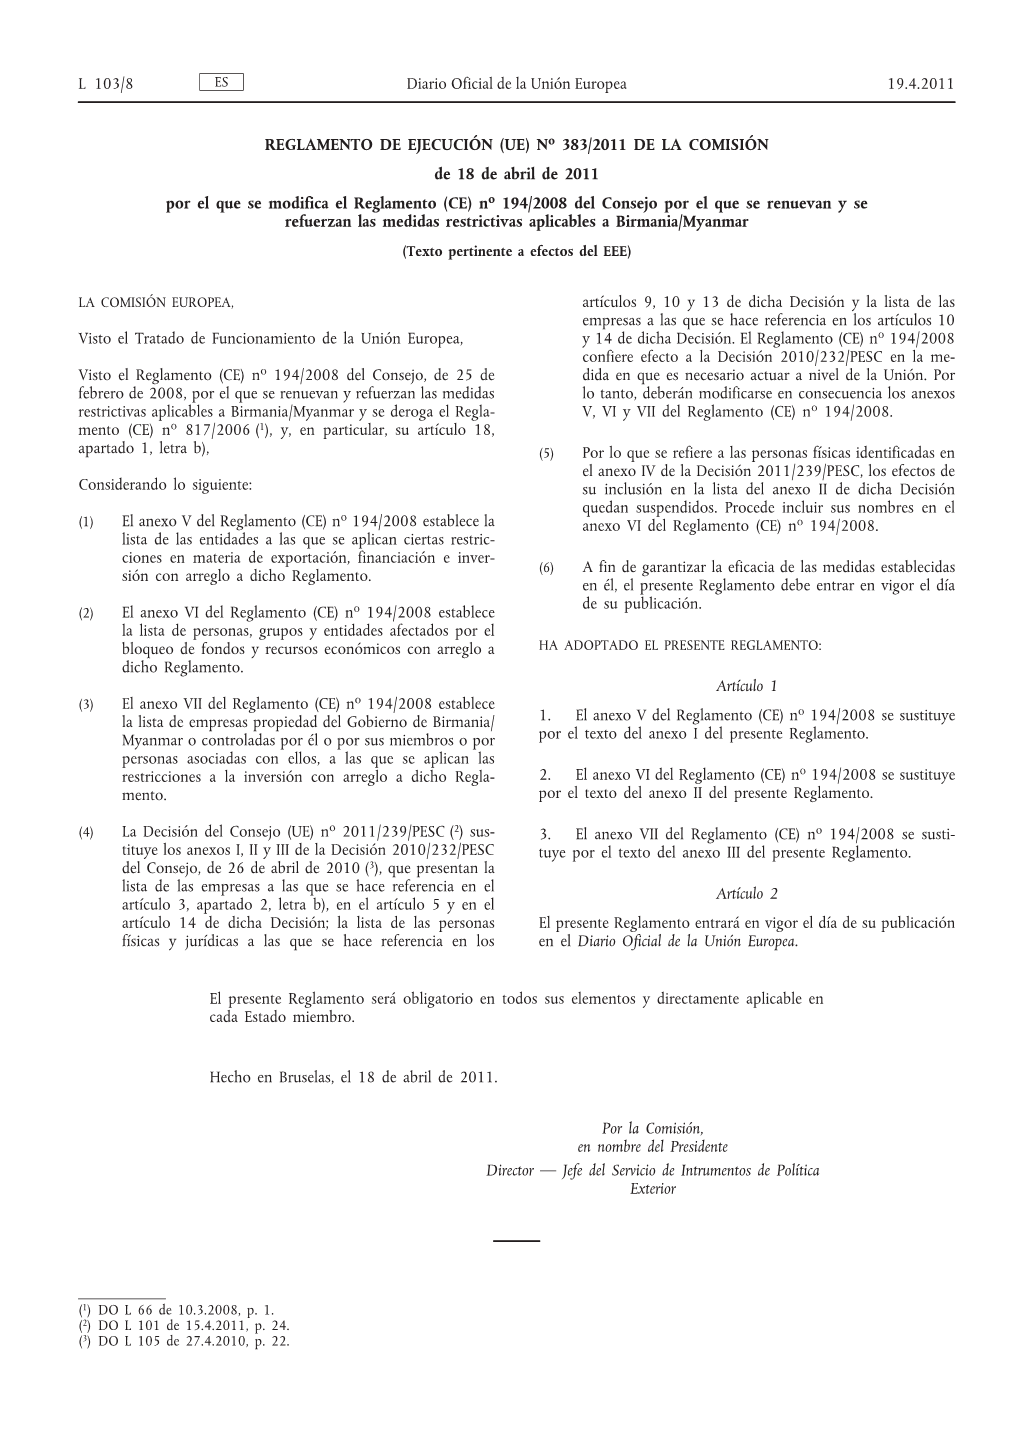 REGLAMENTO DE EJECUCIÓN (UE) No 383/2011 DE LA COMISIÓN